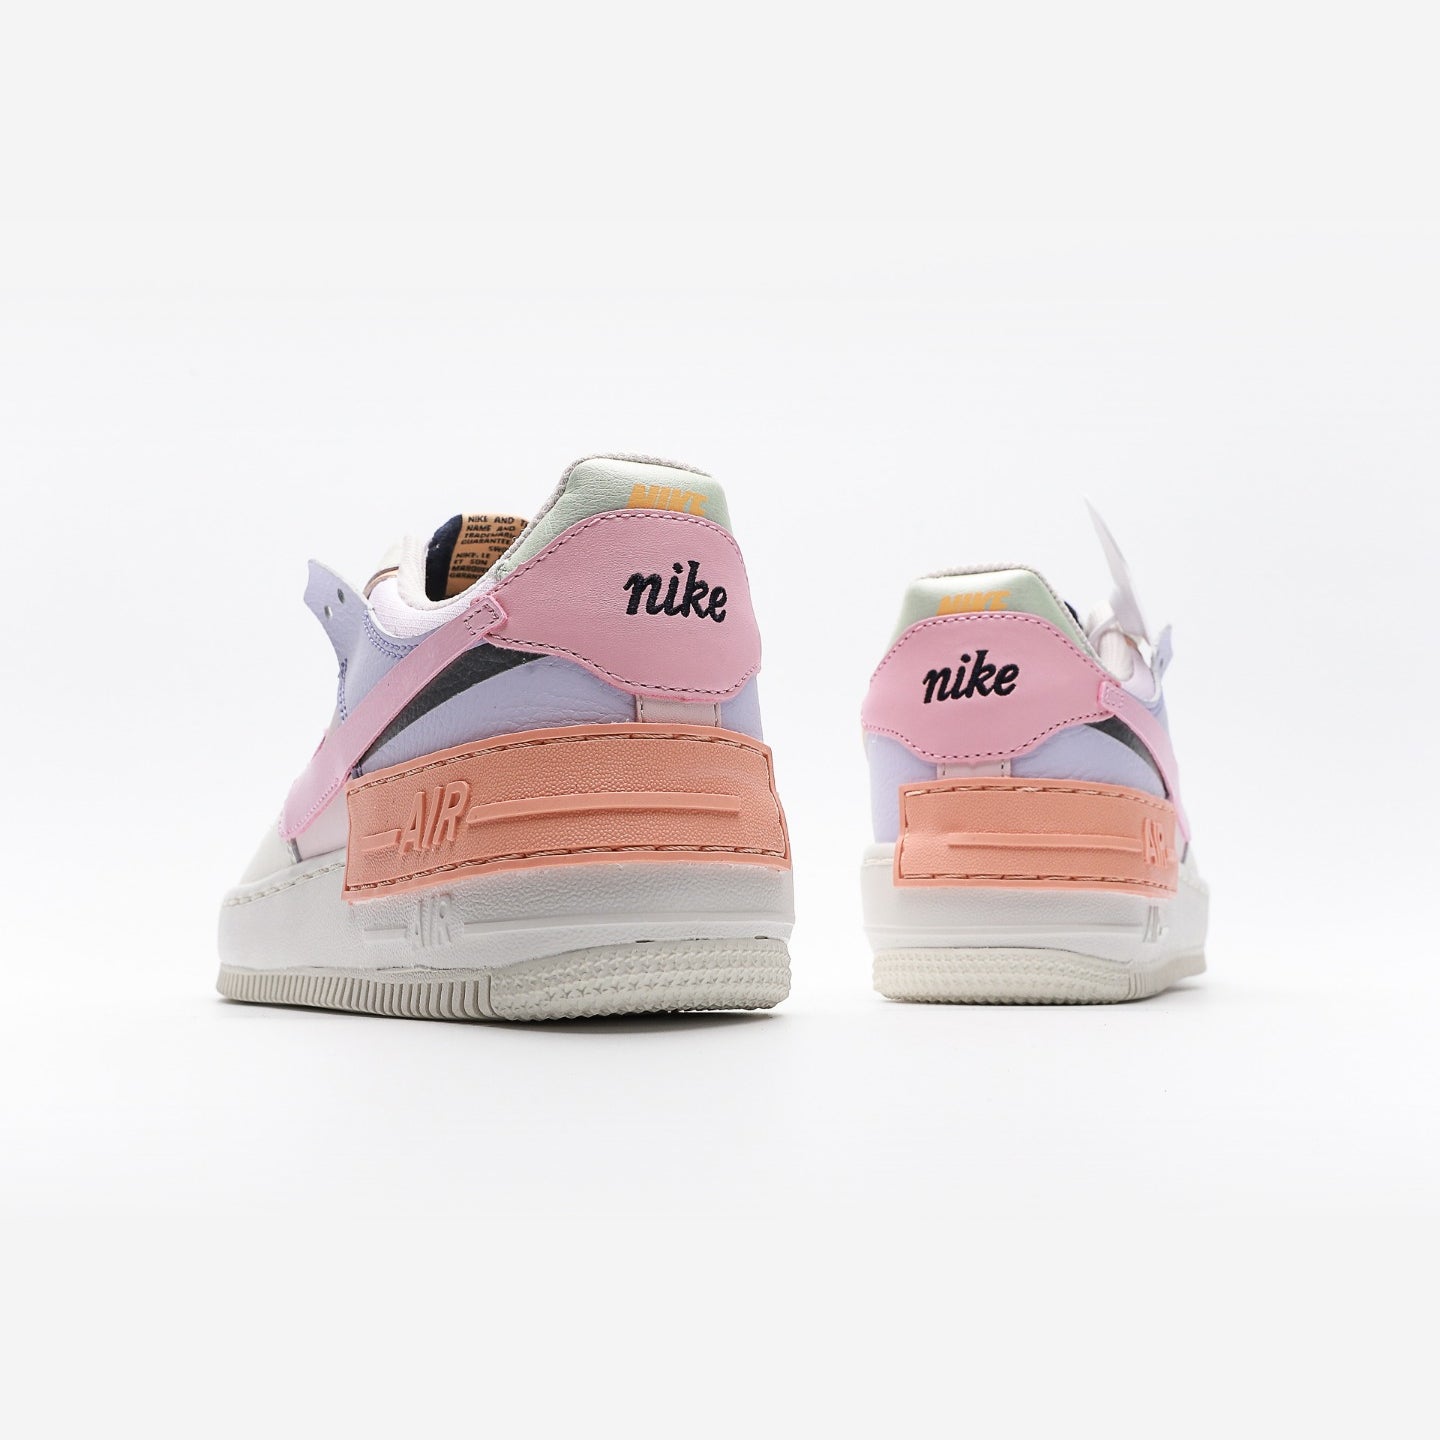 Nike Air Force 1 Low Shadow Sail Pink Glaze (W) - Urbanize Streetwear